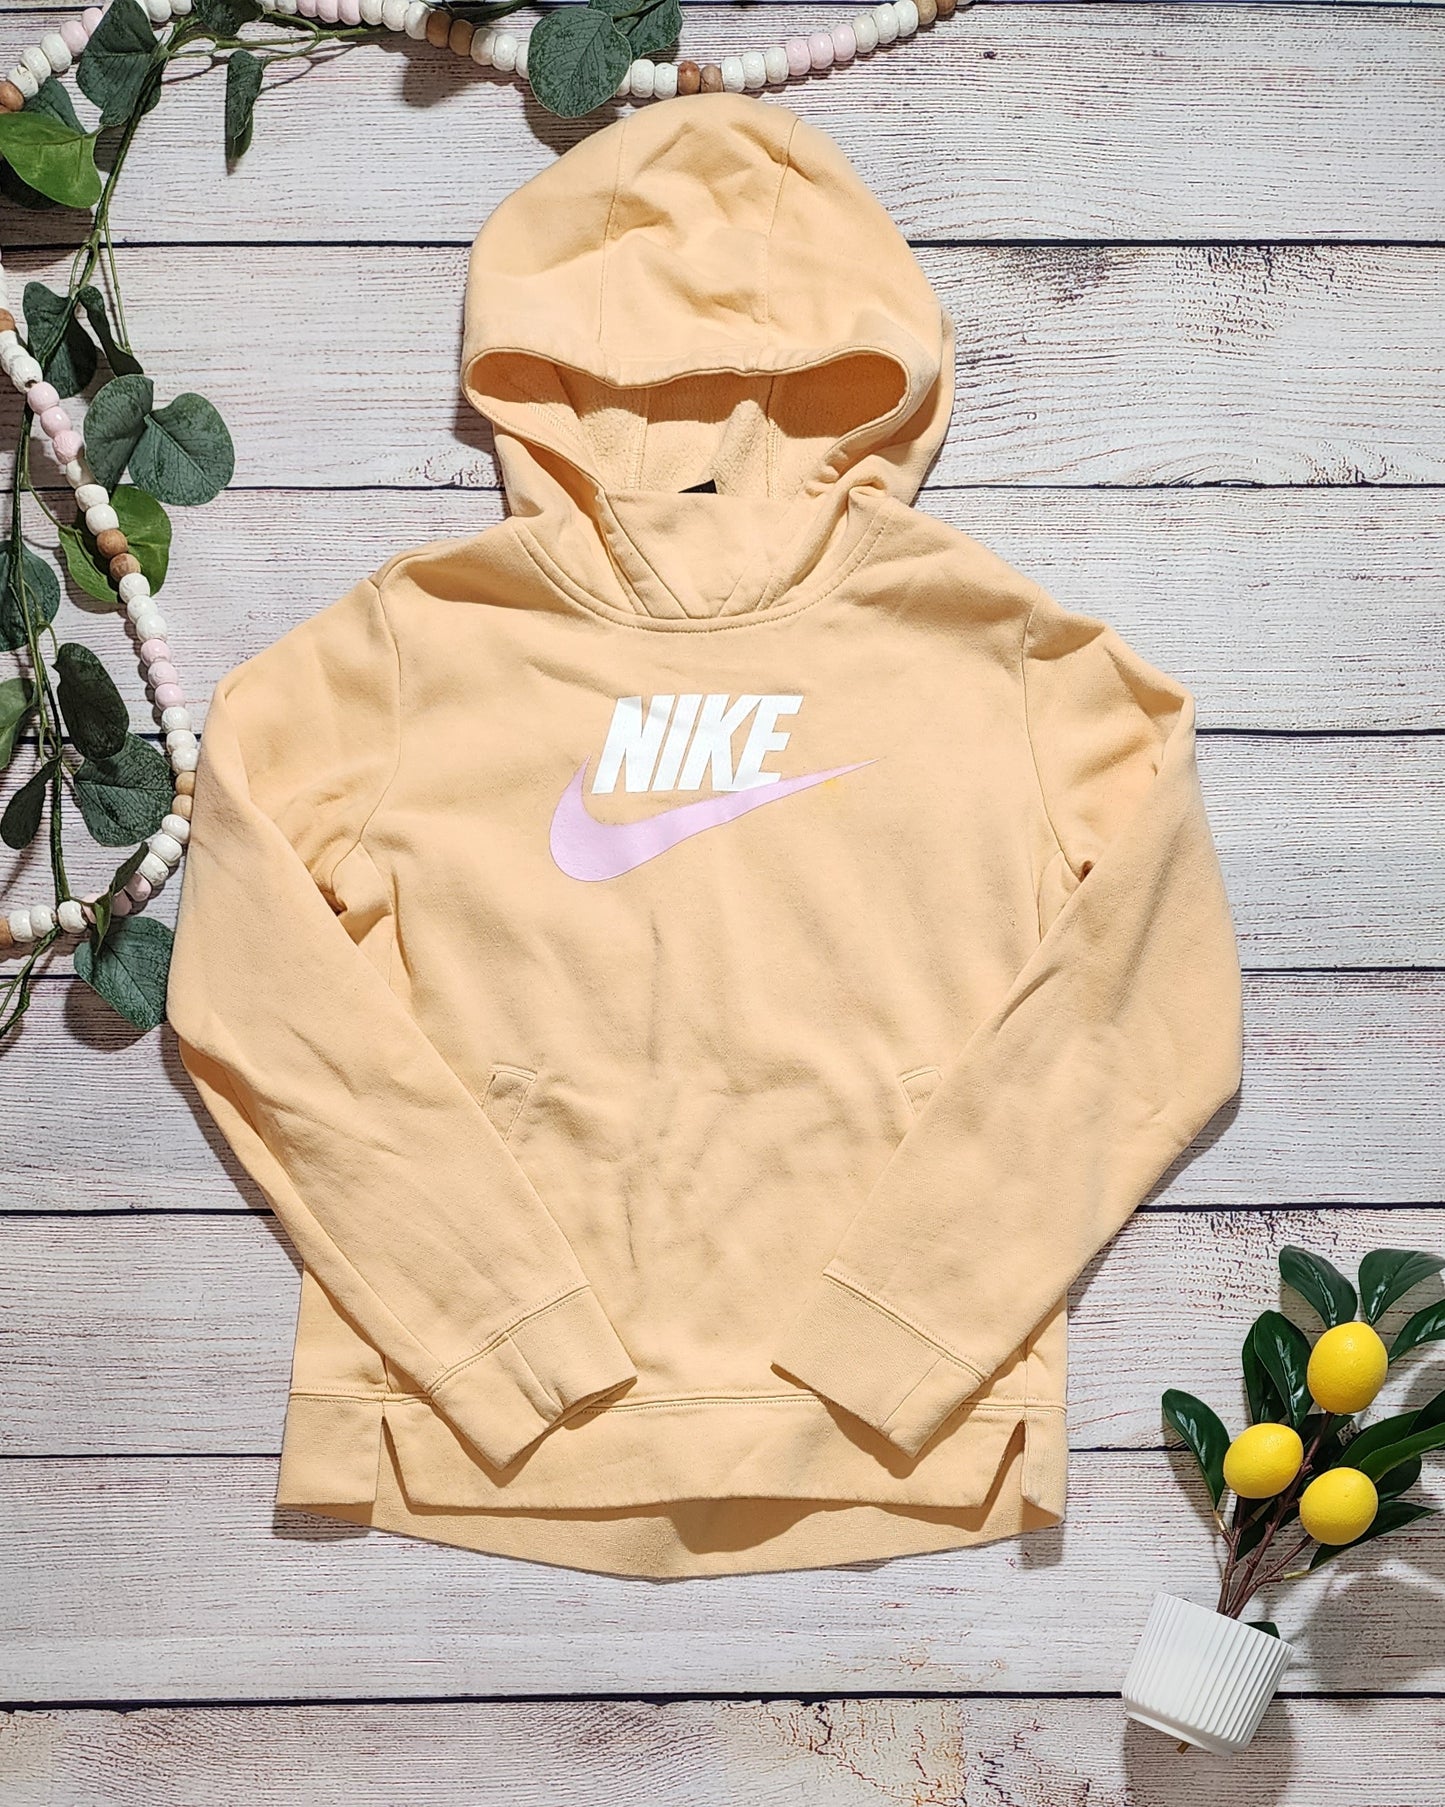 Nike Sweatshirt, Youth Large